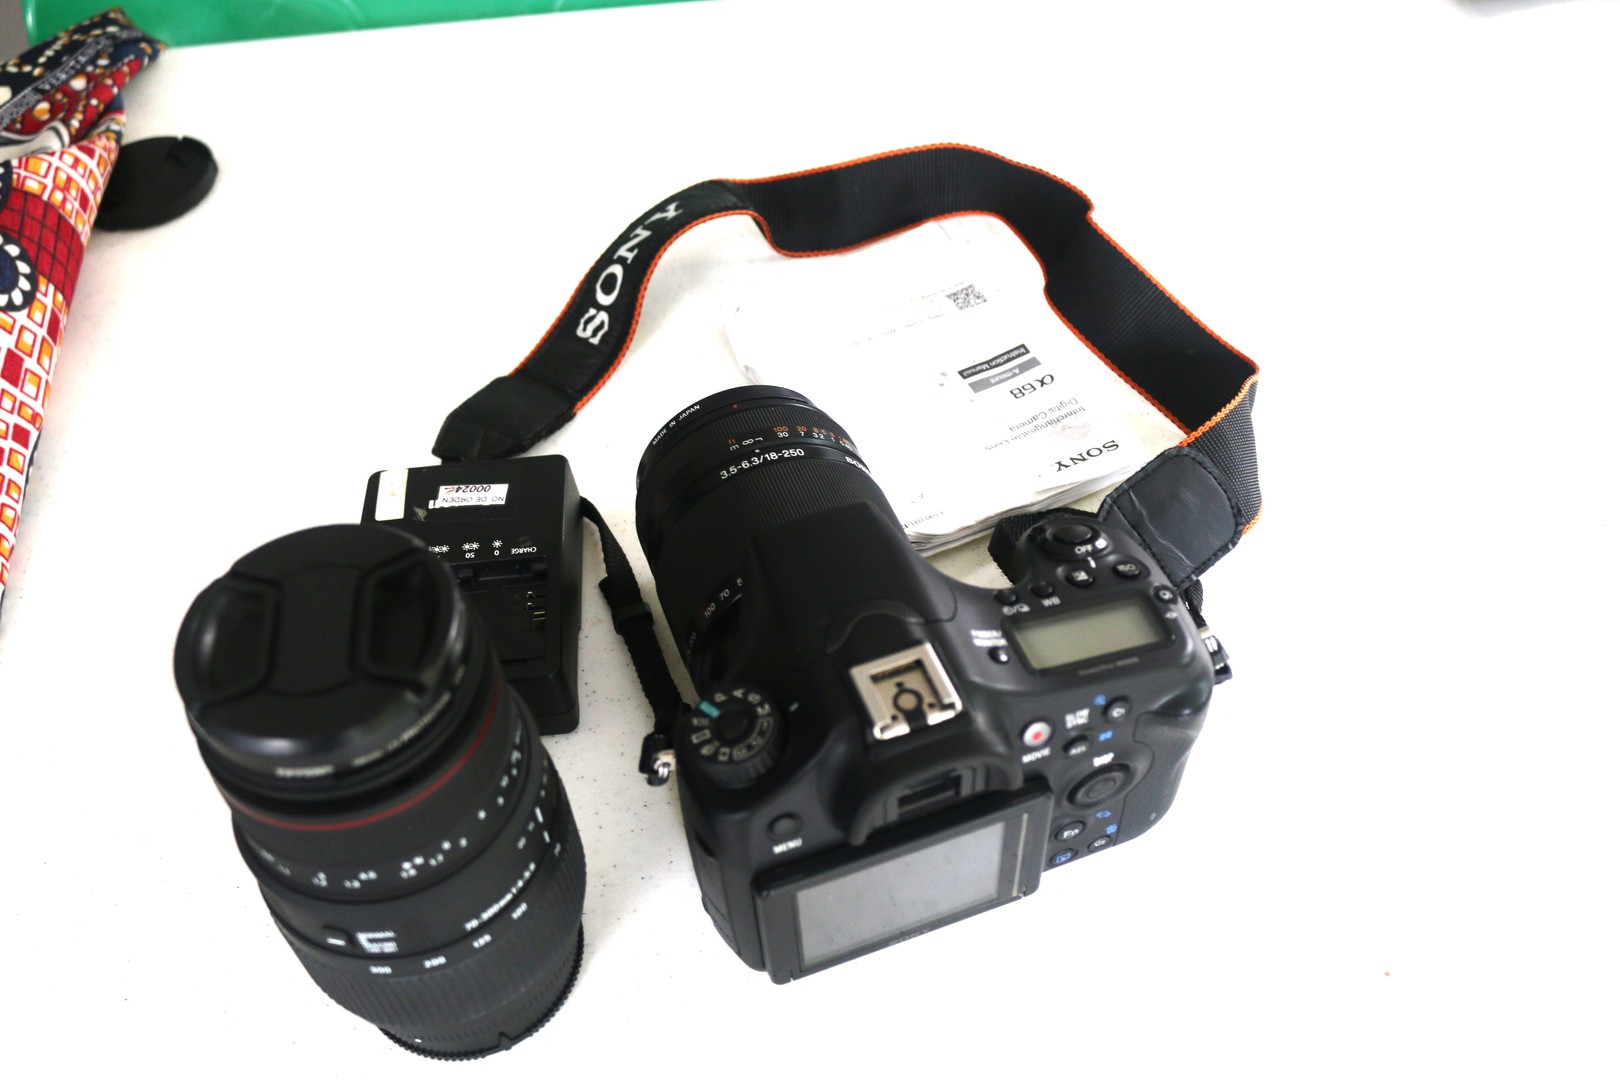 camaras y audio - Camara fotografica SONY alfa 68 con lentes 18-250 y 70-300 1